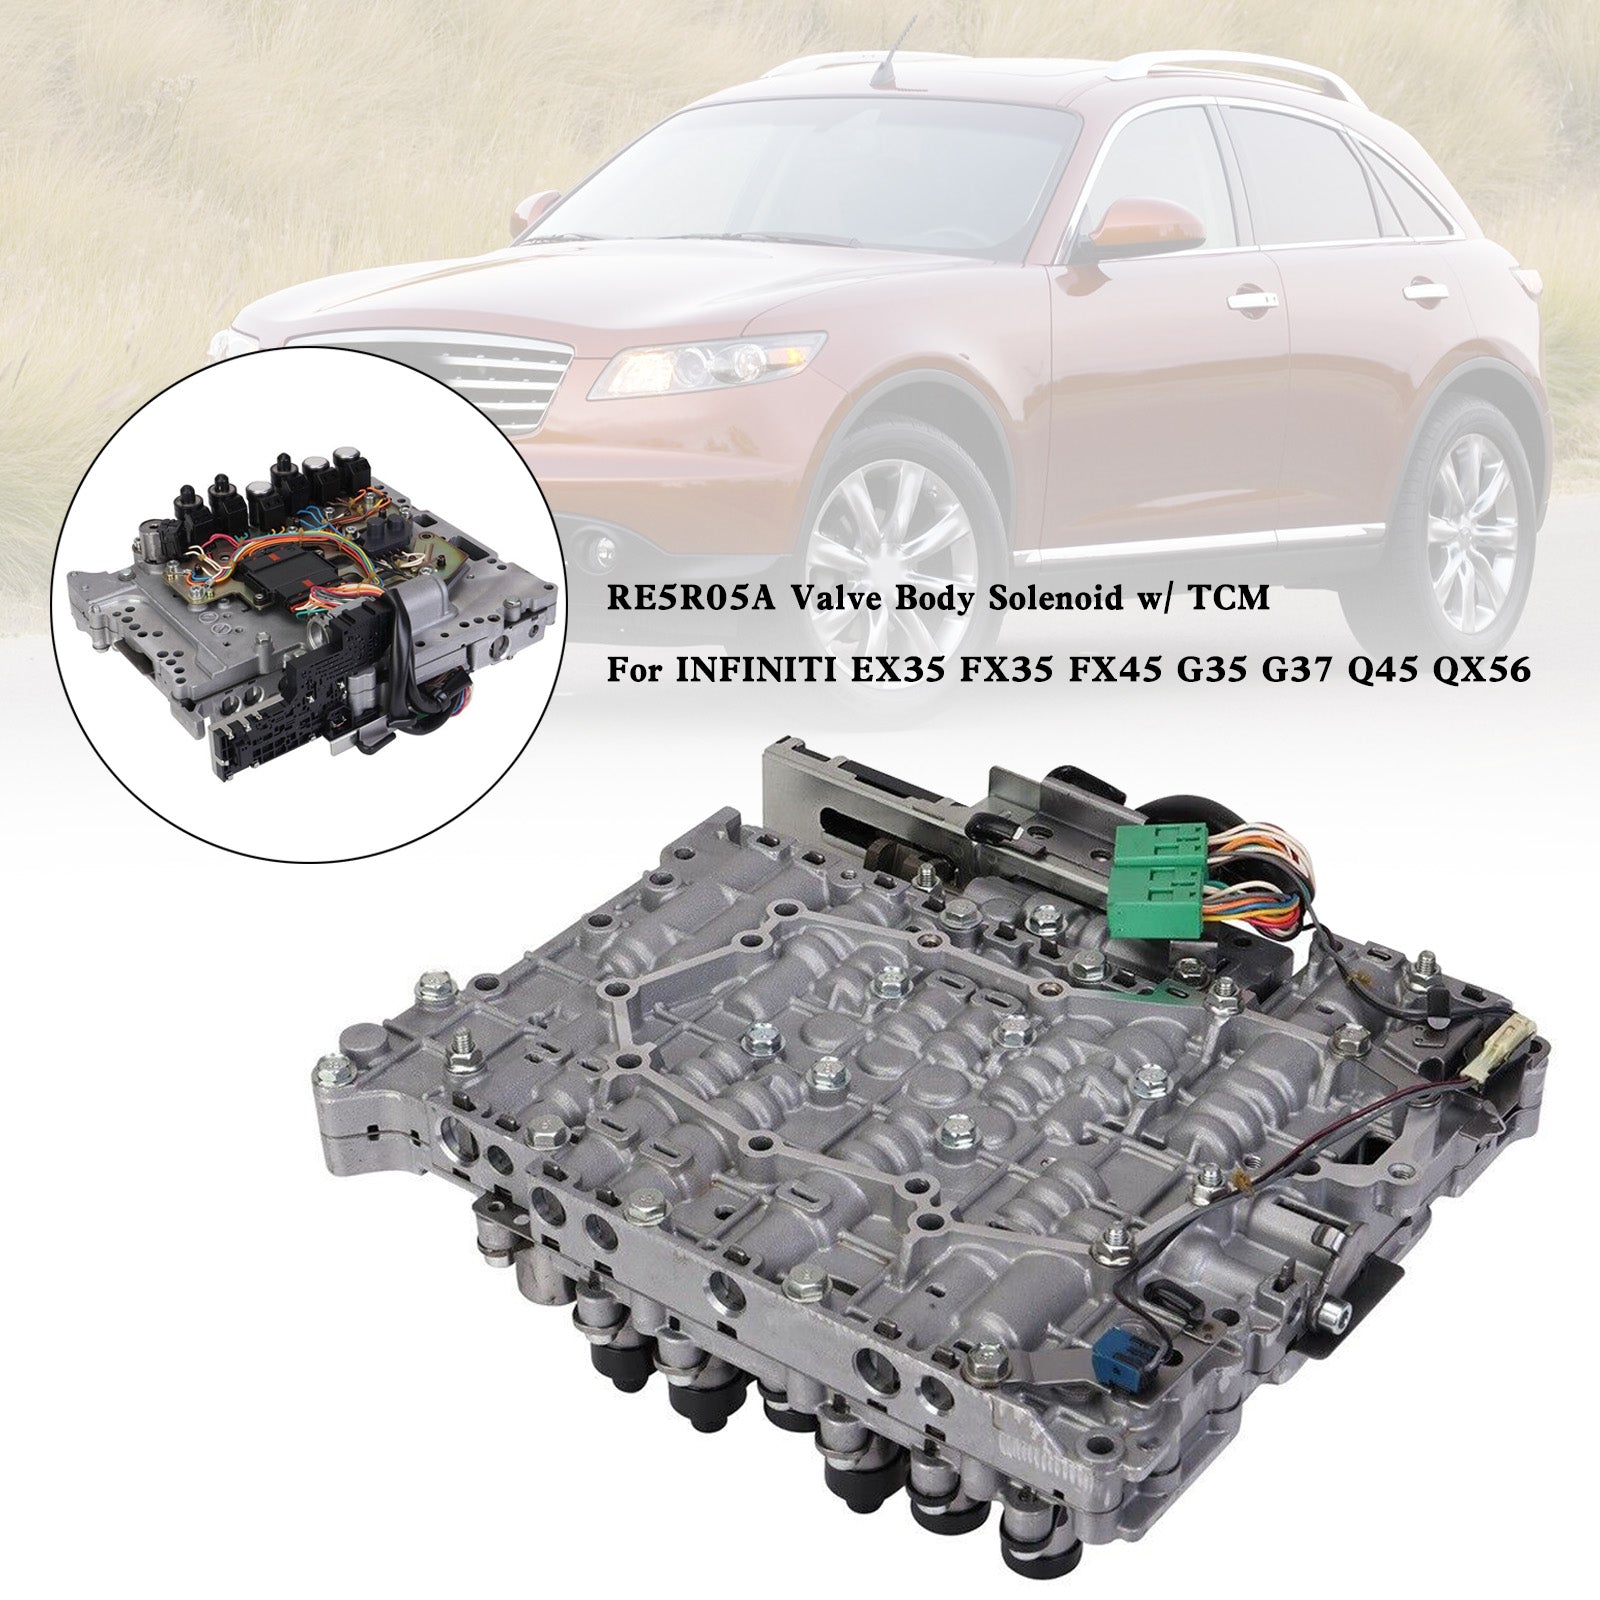 Solenoide de cuerpo de válvula RE5R05A con TCM Nissan Pathfinder 2004-2012